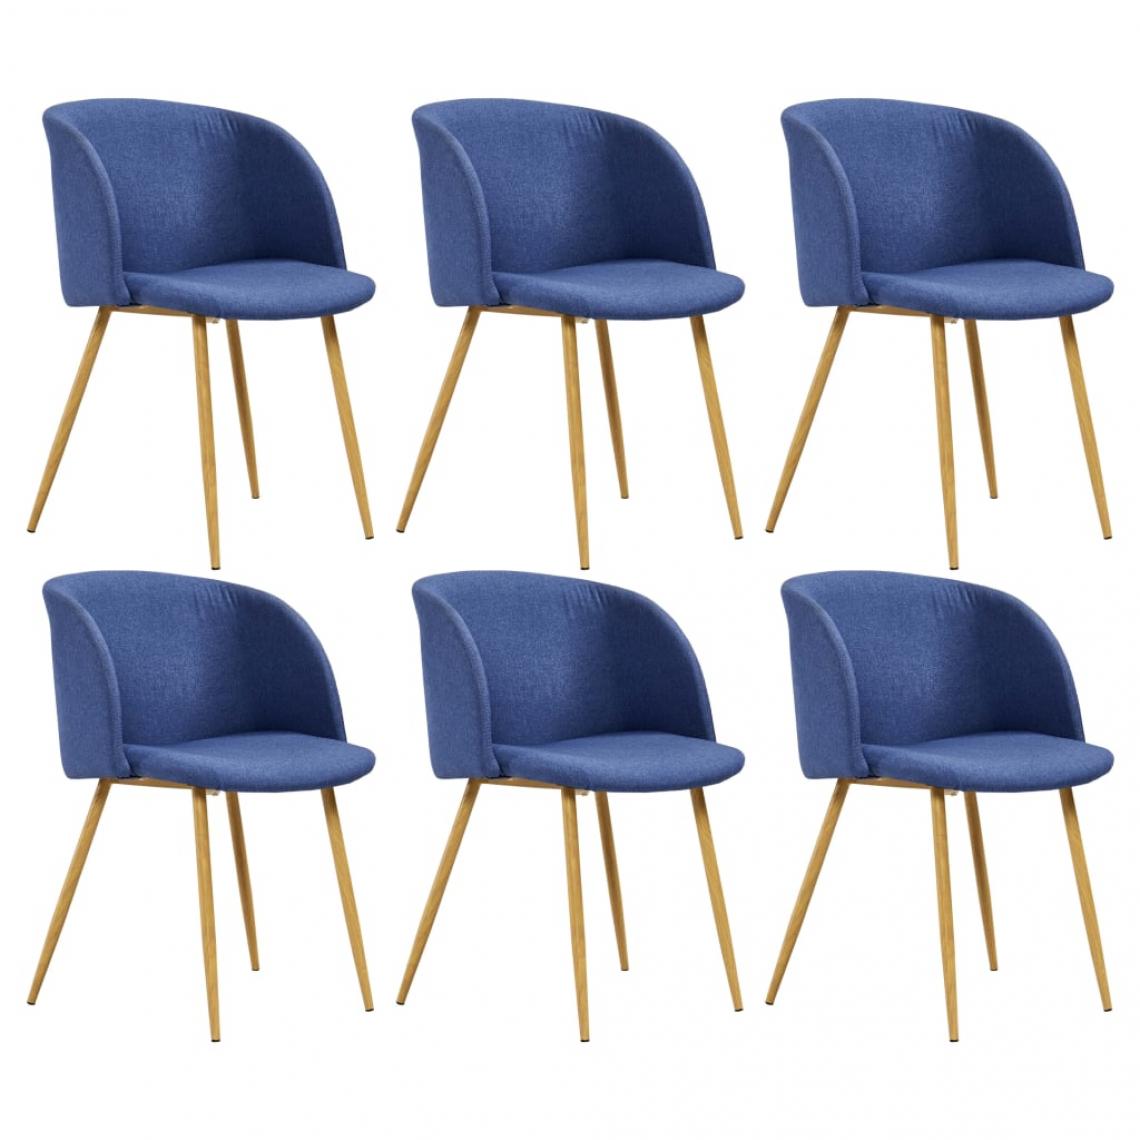 Decoshop26 - Lot de 6 chaises de salle à manger cuisine design moderne tissu bleu CDS022213 - Chaises